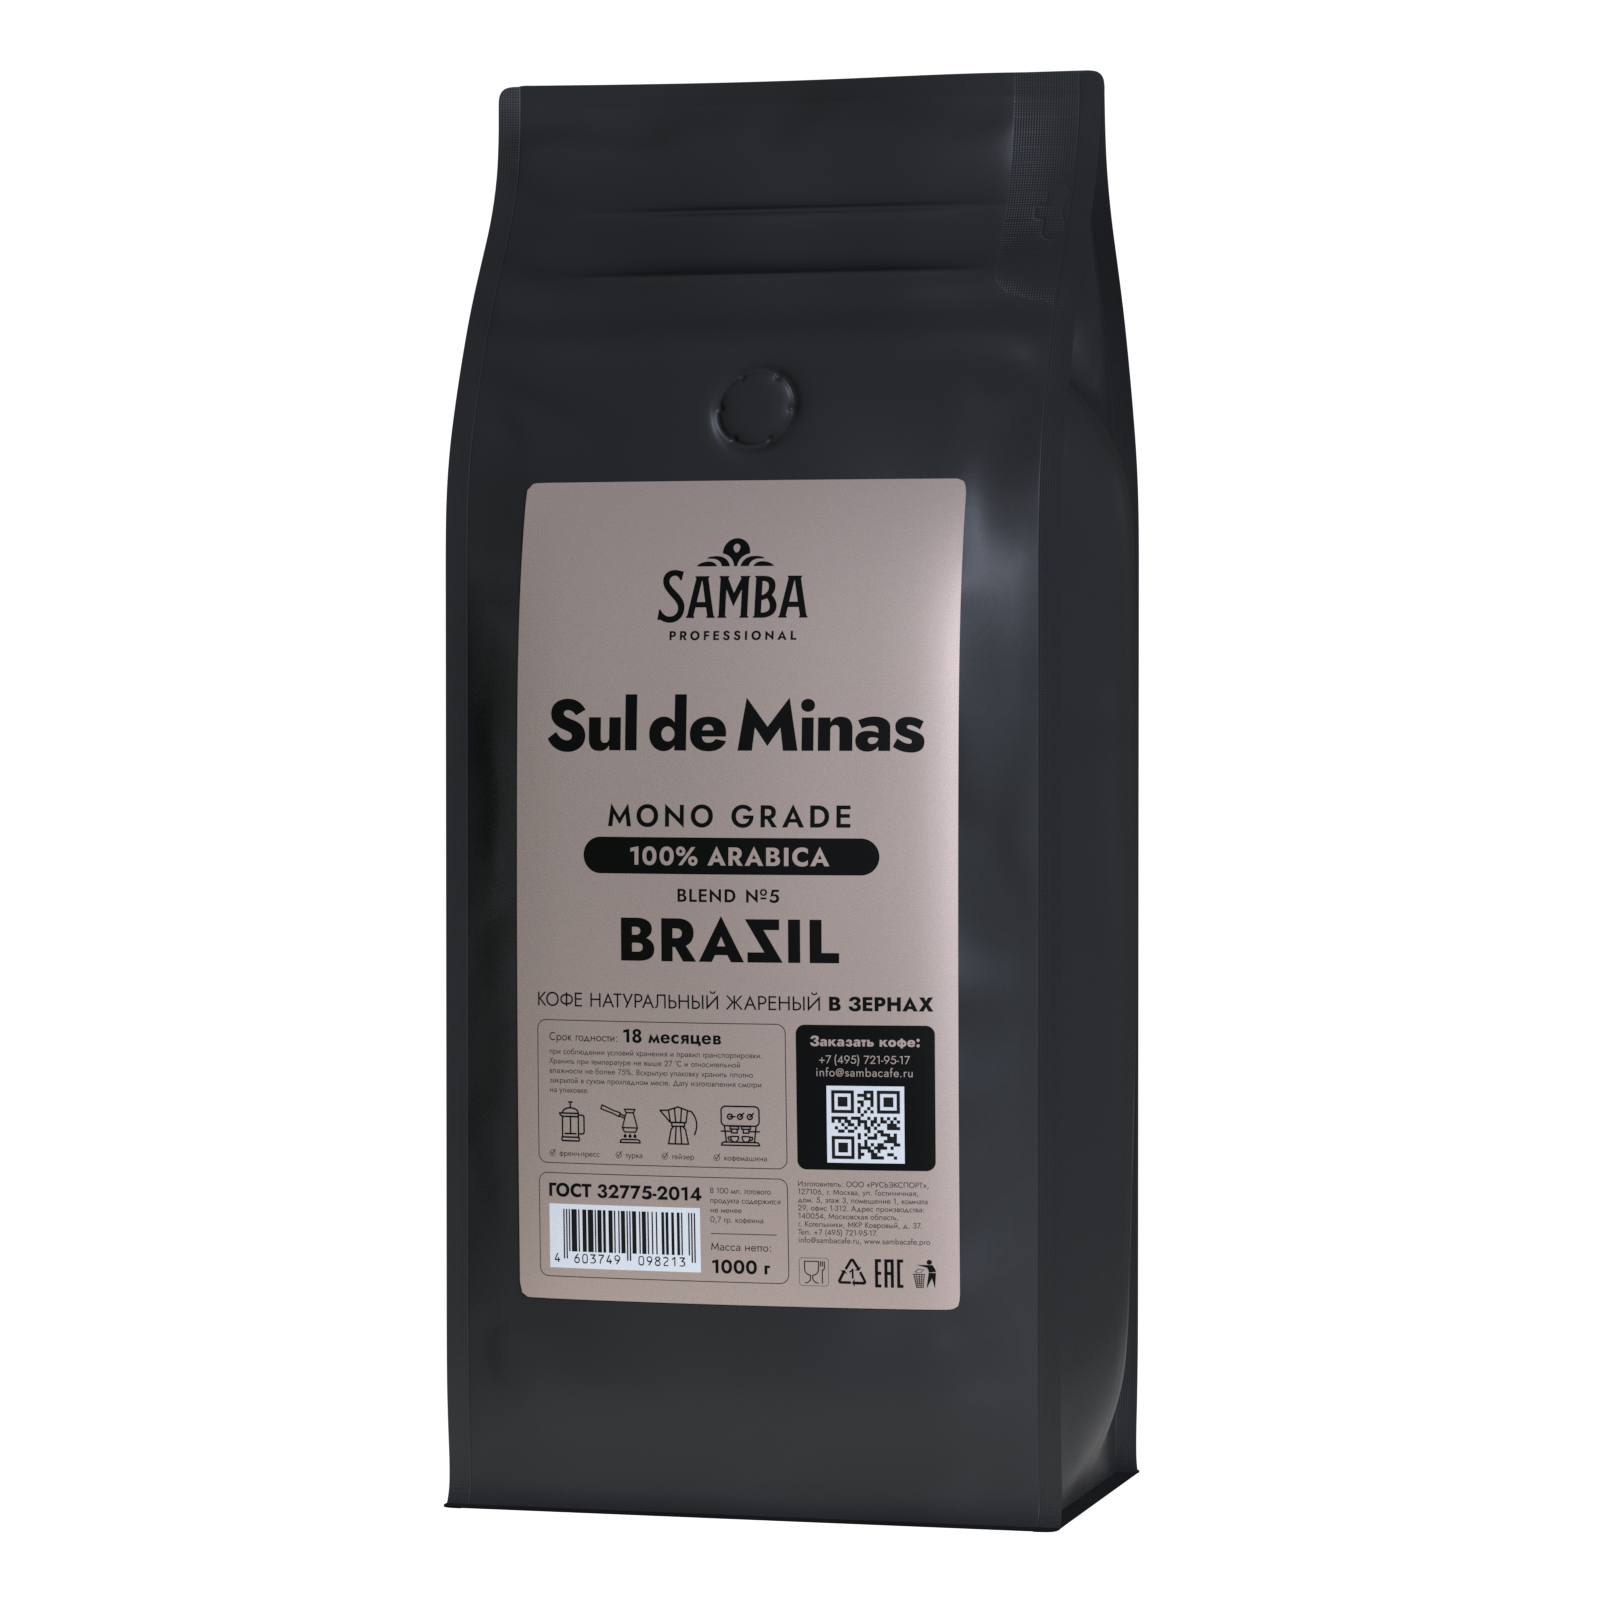 Купить кофе в зернах SAMBA Cafe Brasil Professional PRO Blend №5 Суль-де-Минас, арабика, 1000 гр, цены на Мегамаркет | Артикул: 600010854624